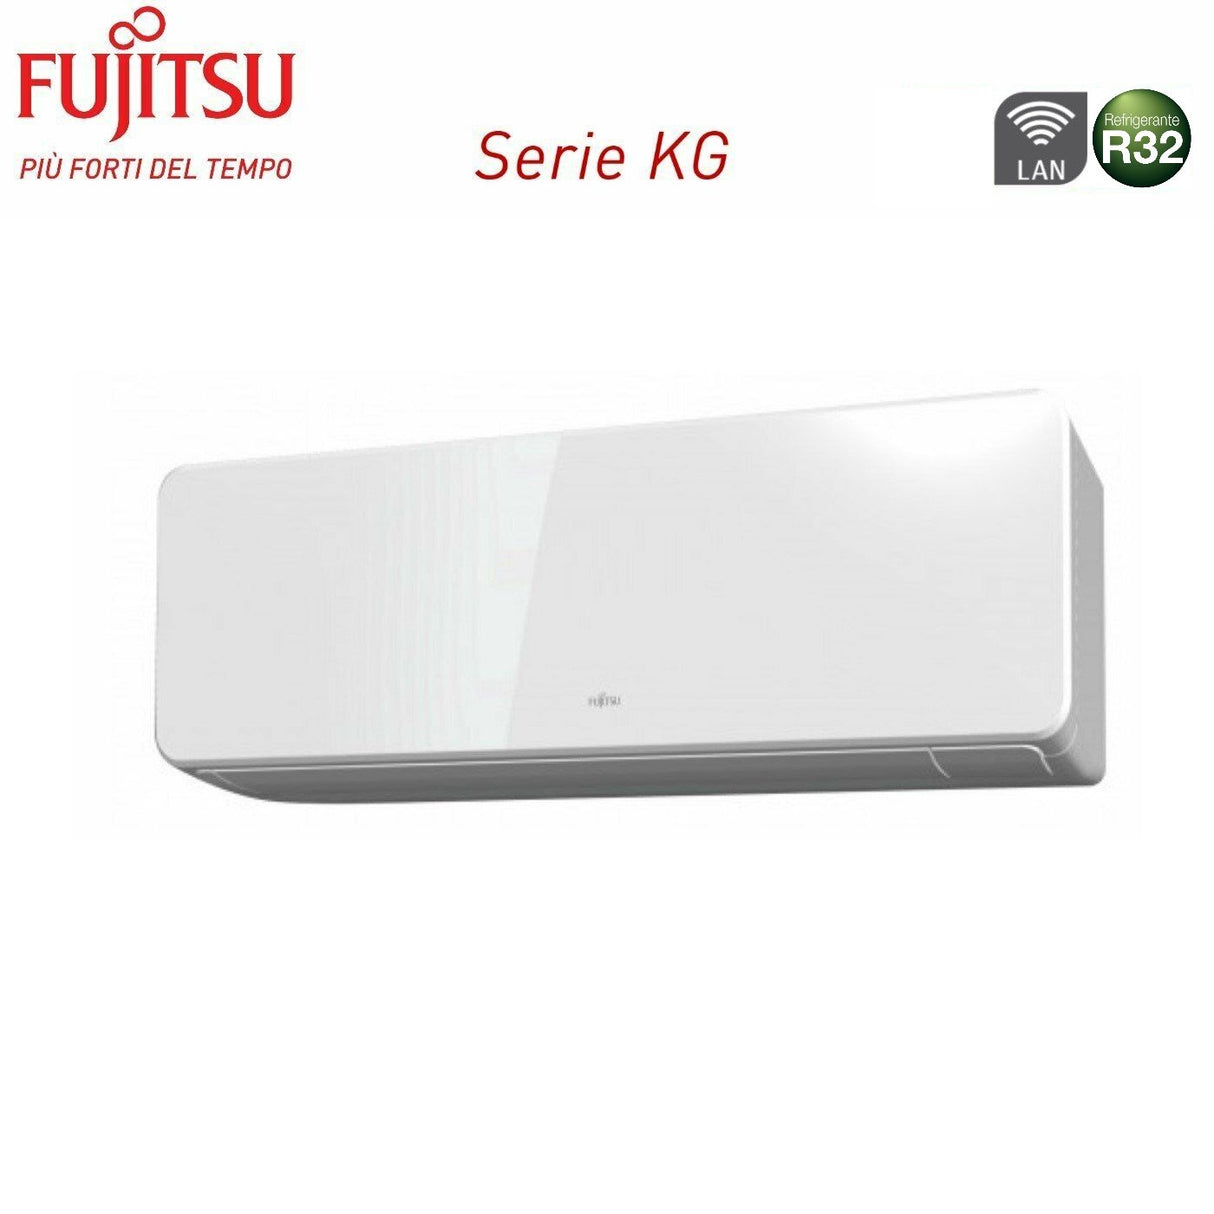 immagine-3-fujitsu-climatizzatore-condizionatore-fujitsu-dual-split-inverter-serie-kg-1214-con-aoyg18kbta2-r-32-wi-fi-integrato-1200014000